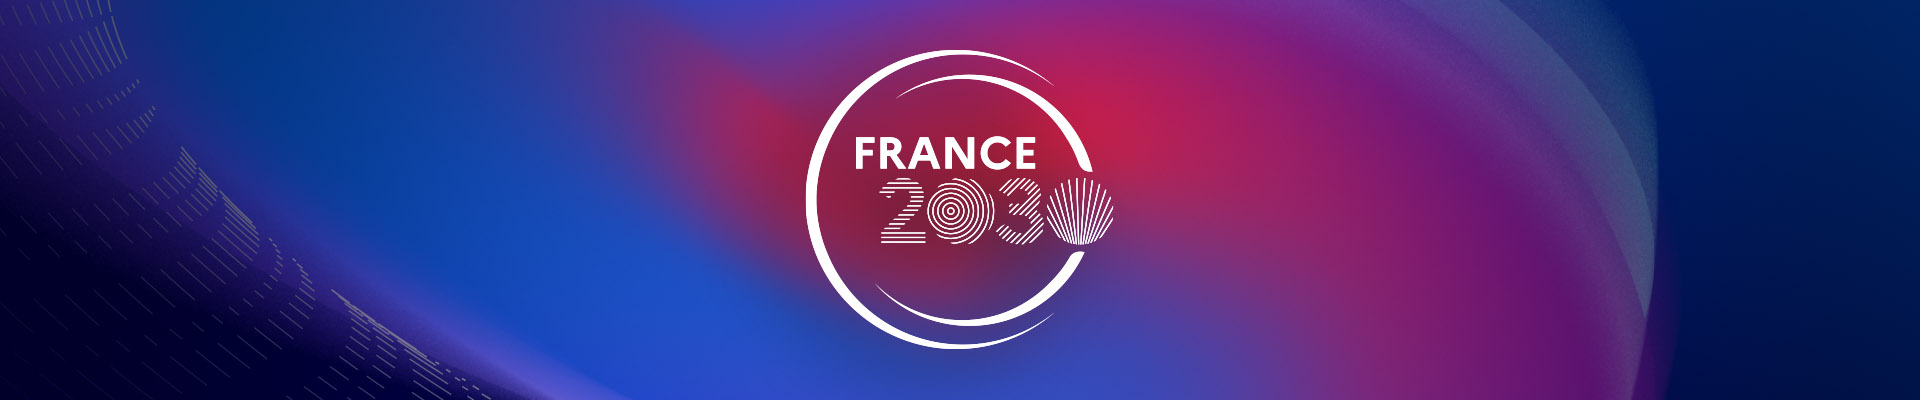 Les objectifs de France 2030